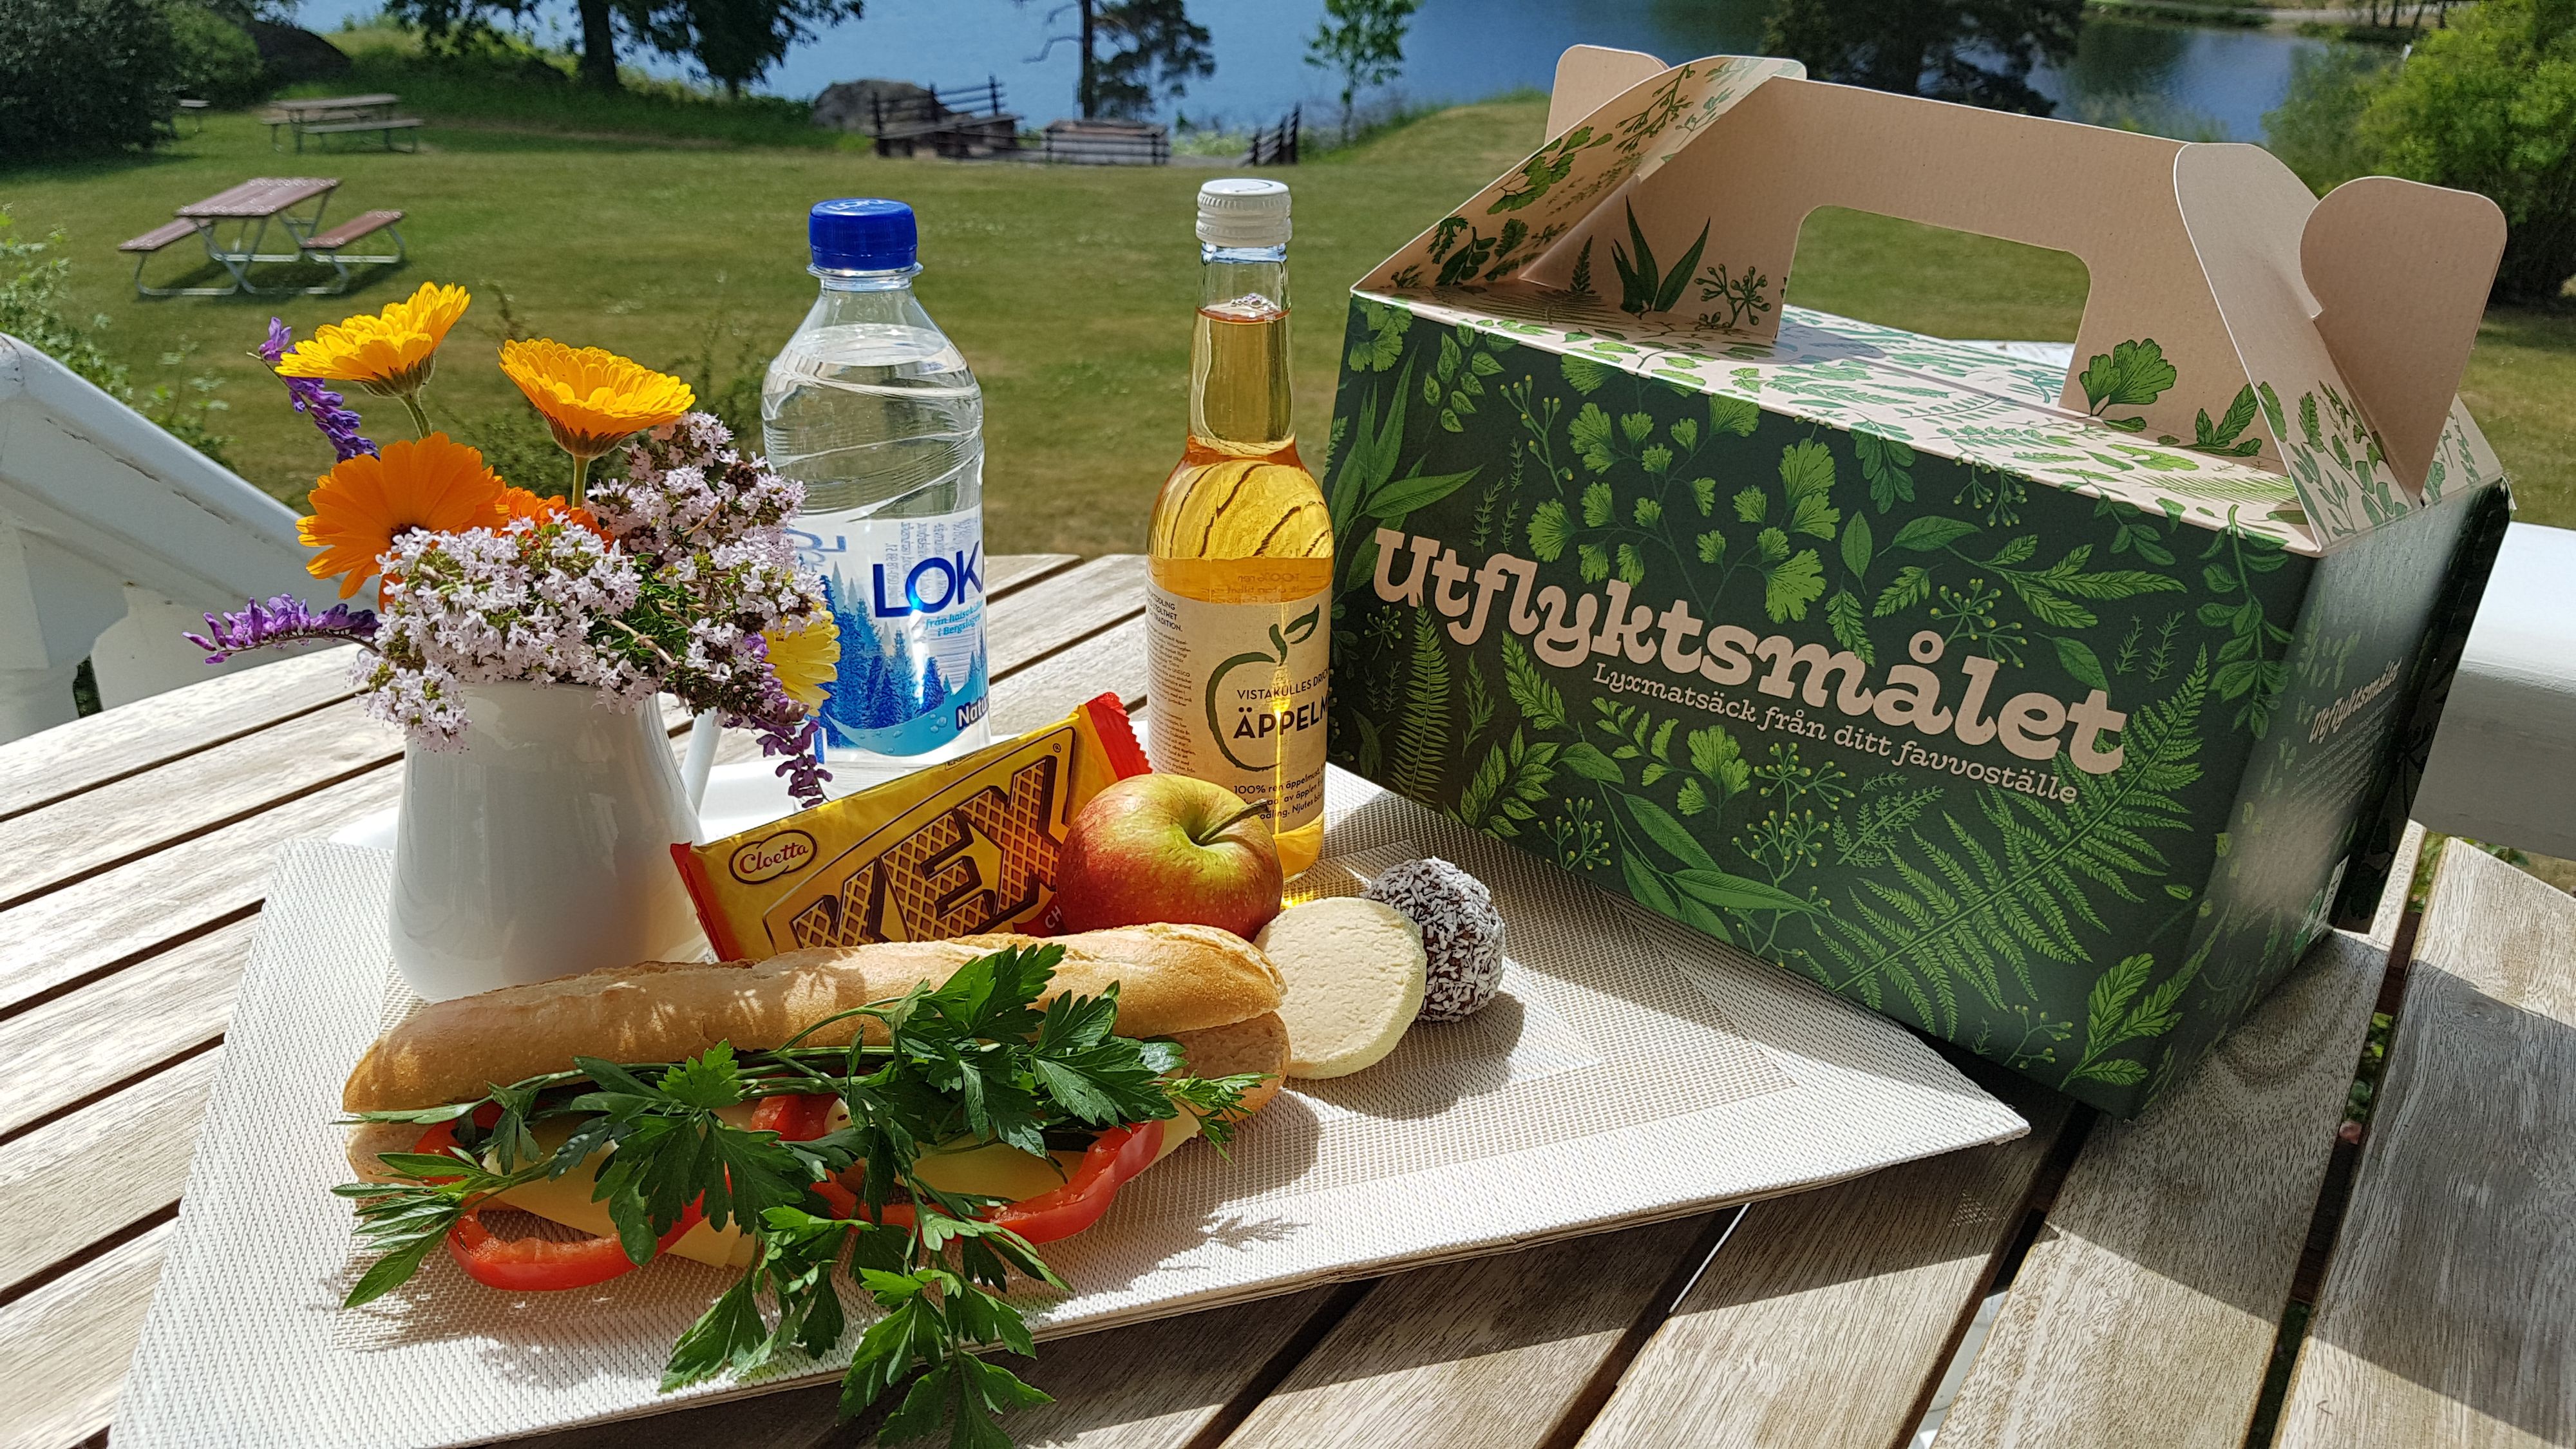 Utflyktsmålet på Liljeholmen Herrgård  innehåller en enklare lunch/fika